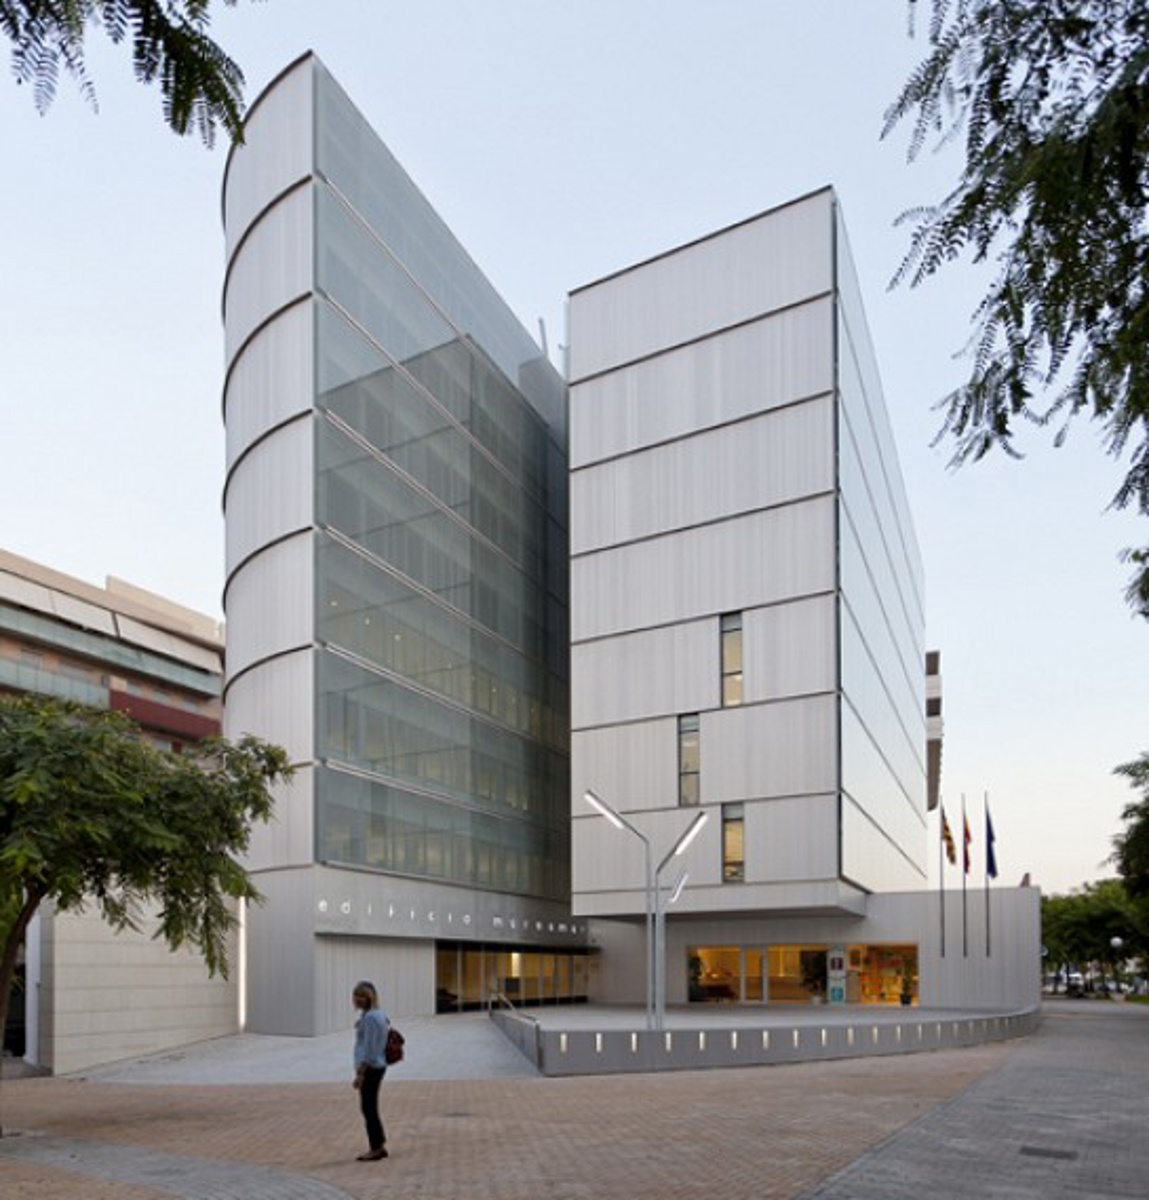  Edificio de Oficinas Marsamar en Alicante